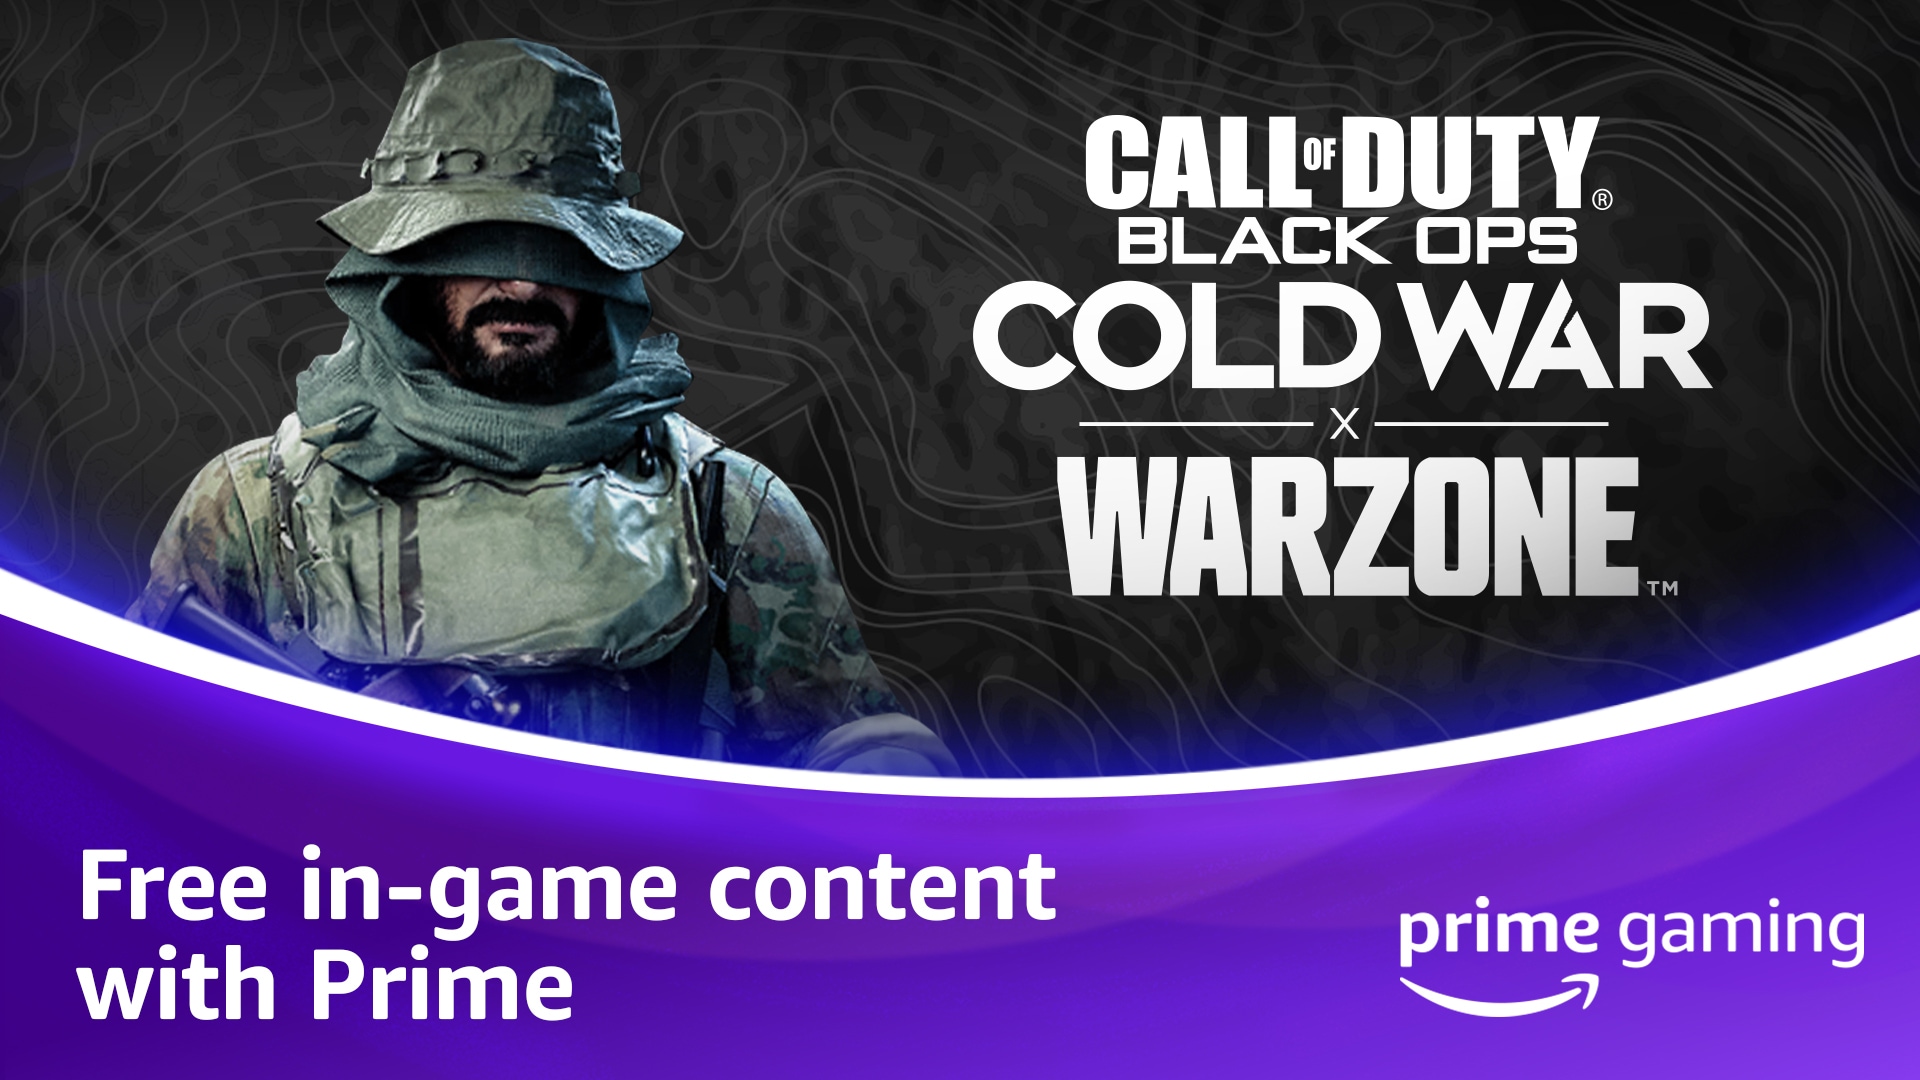 Wir stellen vor: Prime Gaming-Belohnungen für Prime-Mitglieder zu Call of Duty®: Black Ops Cold War, Warzone™ und Mobile